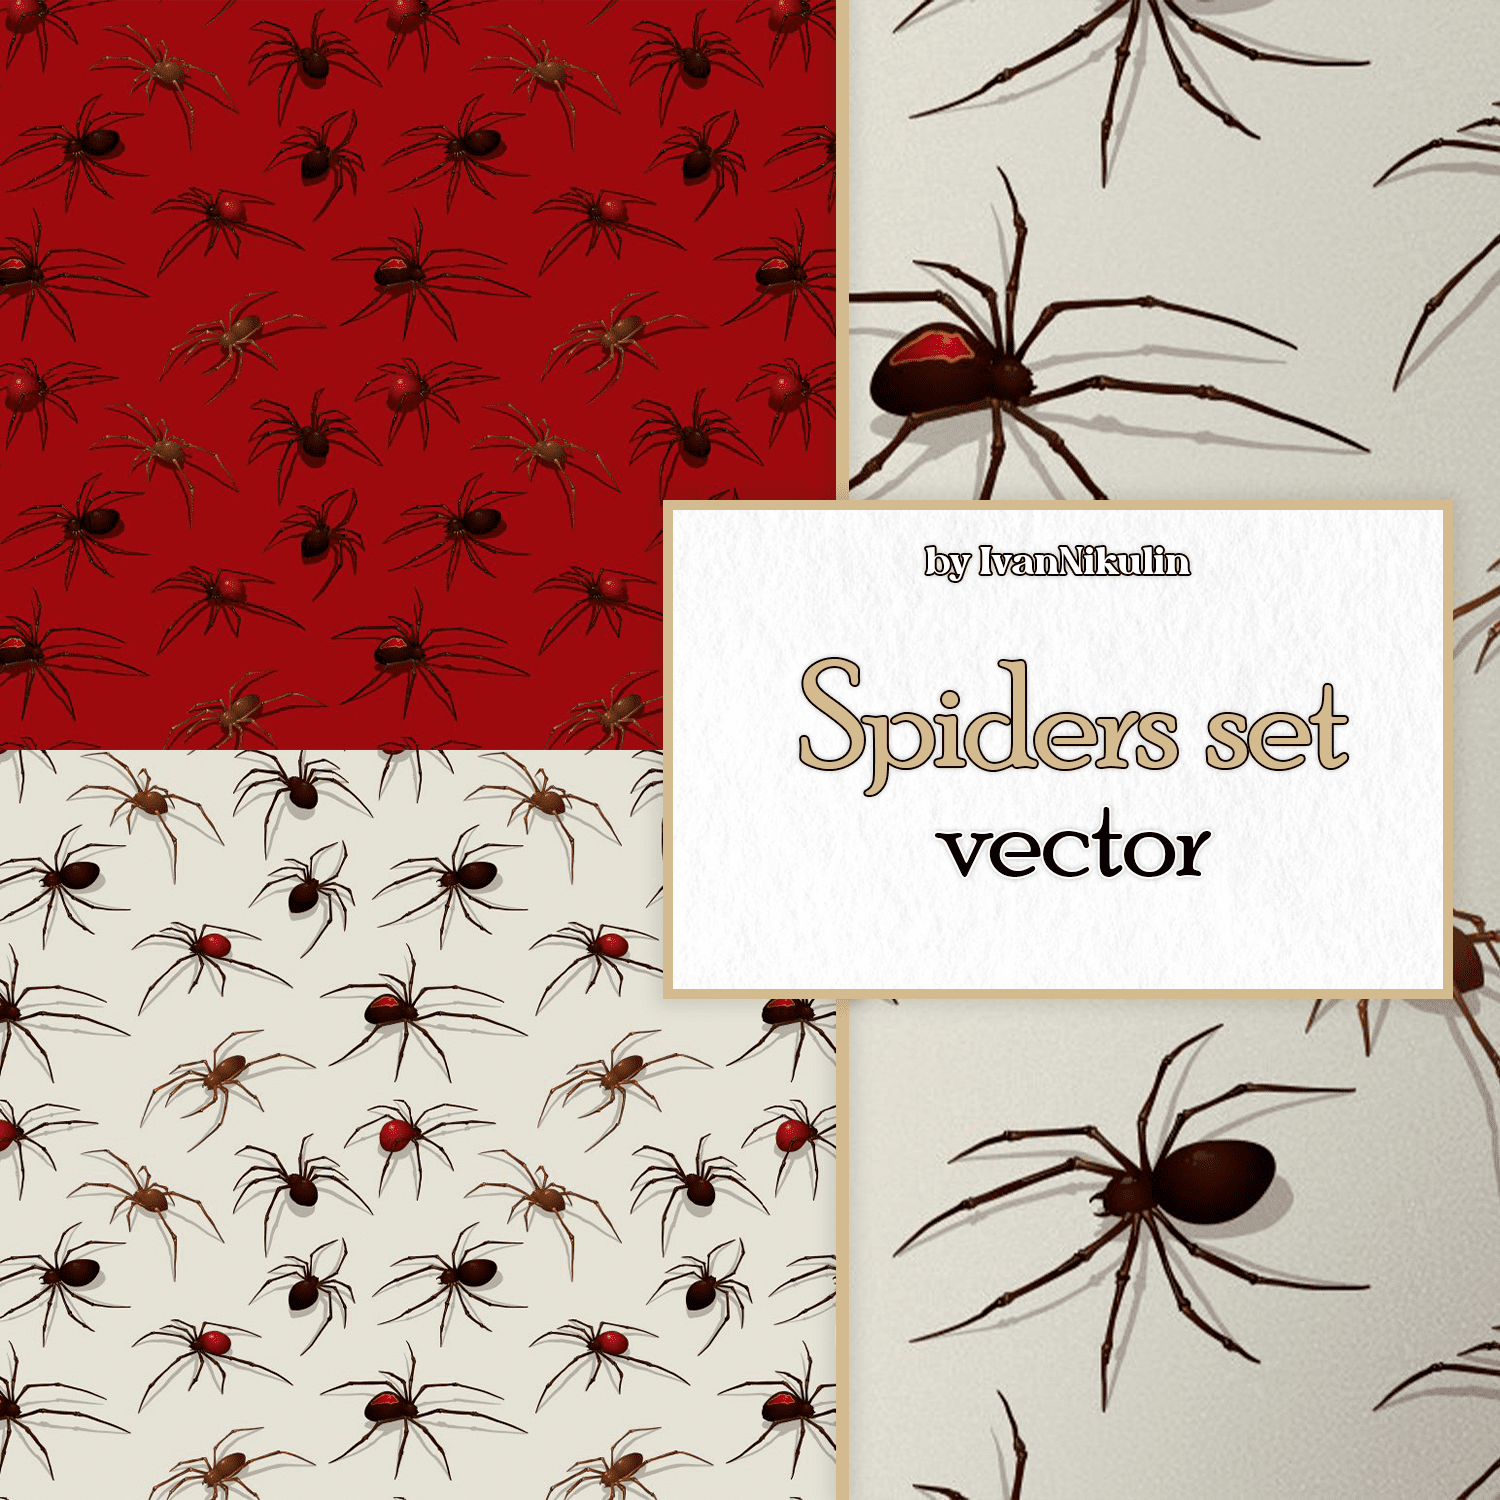 Spiders set, vector.